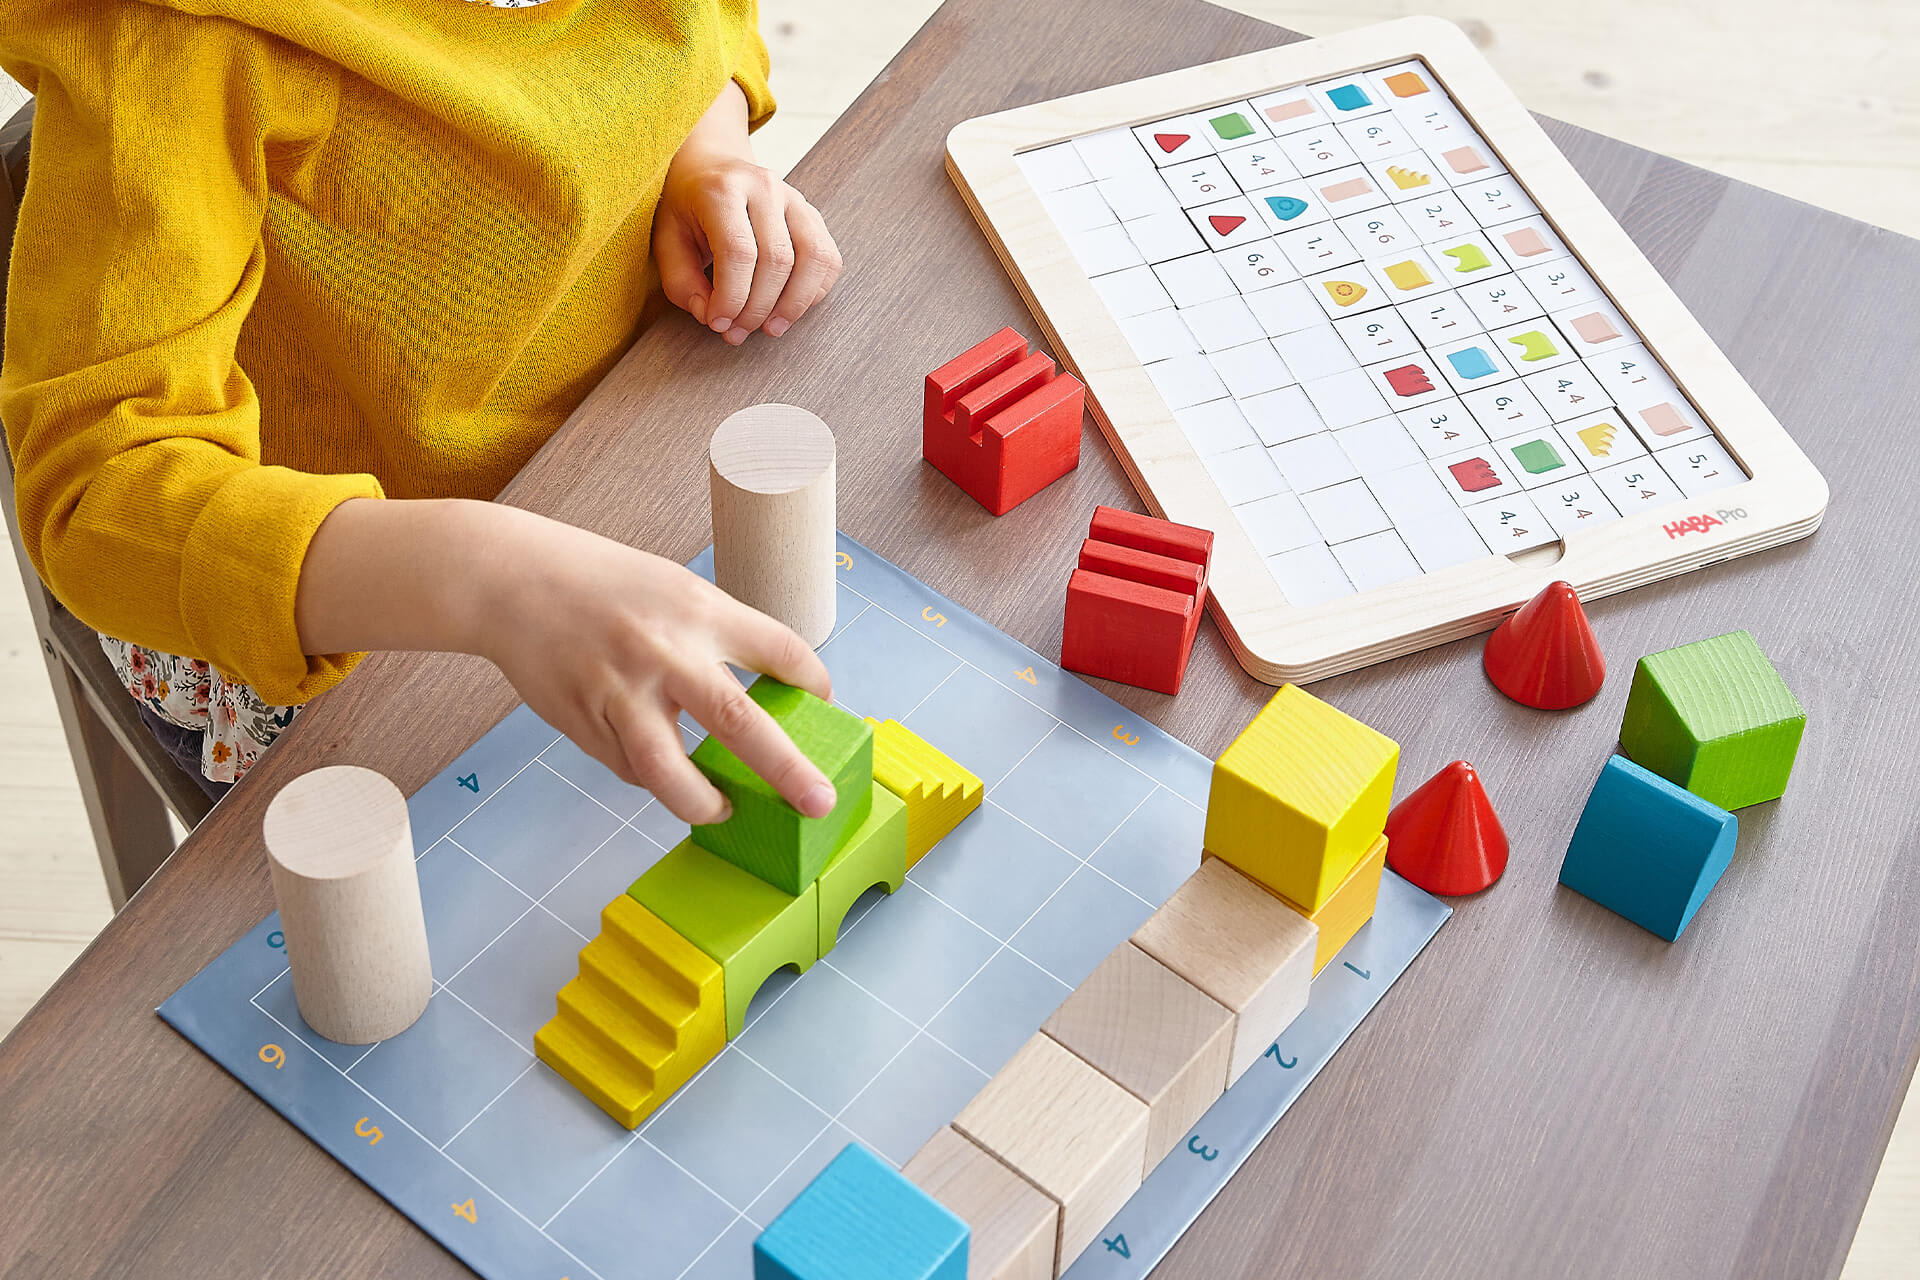 Digital Starter | Kind spielt mit Spiel Coding Architekt von Digital Starter